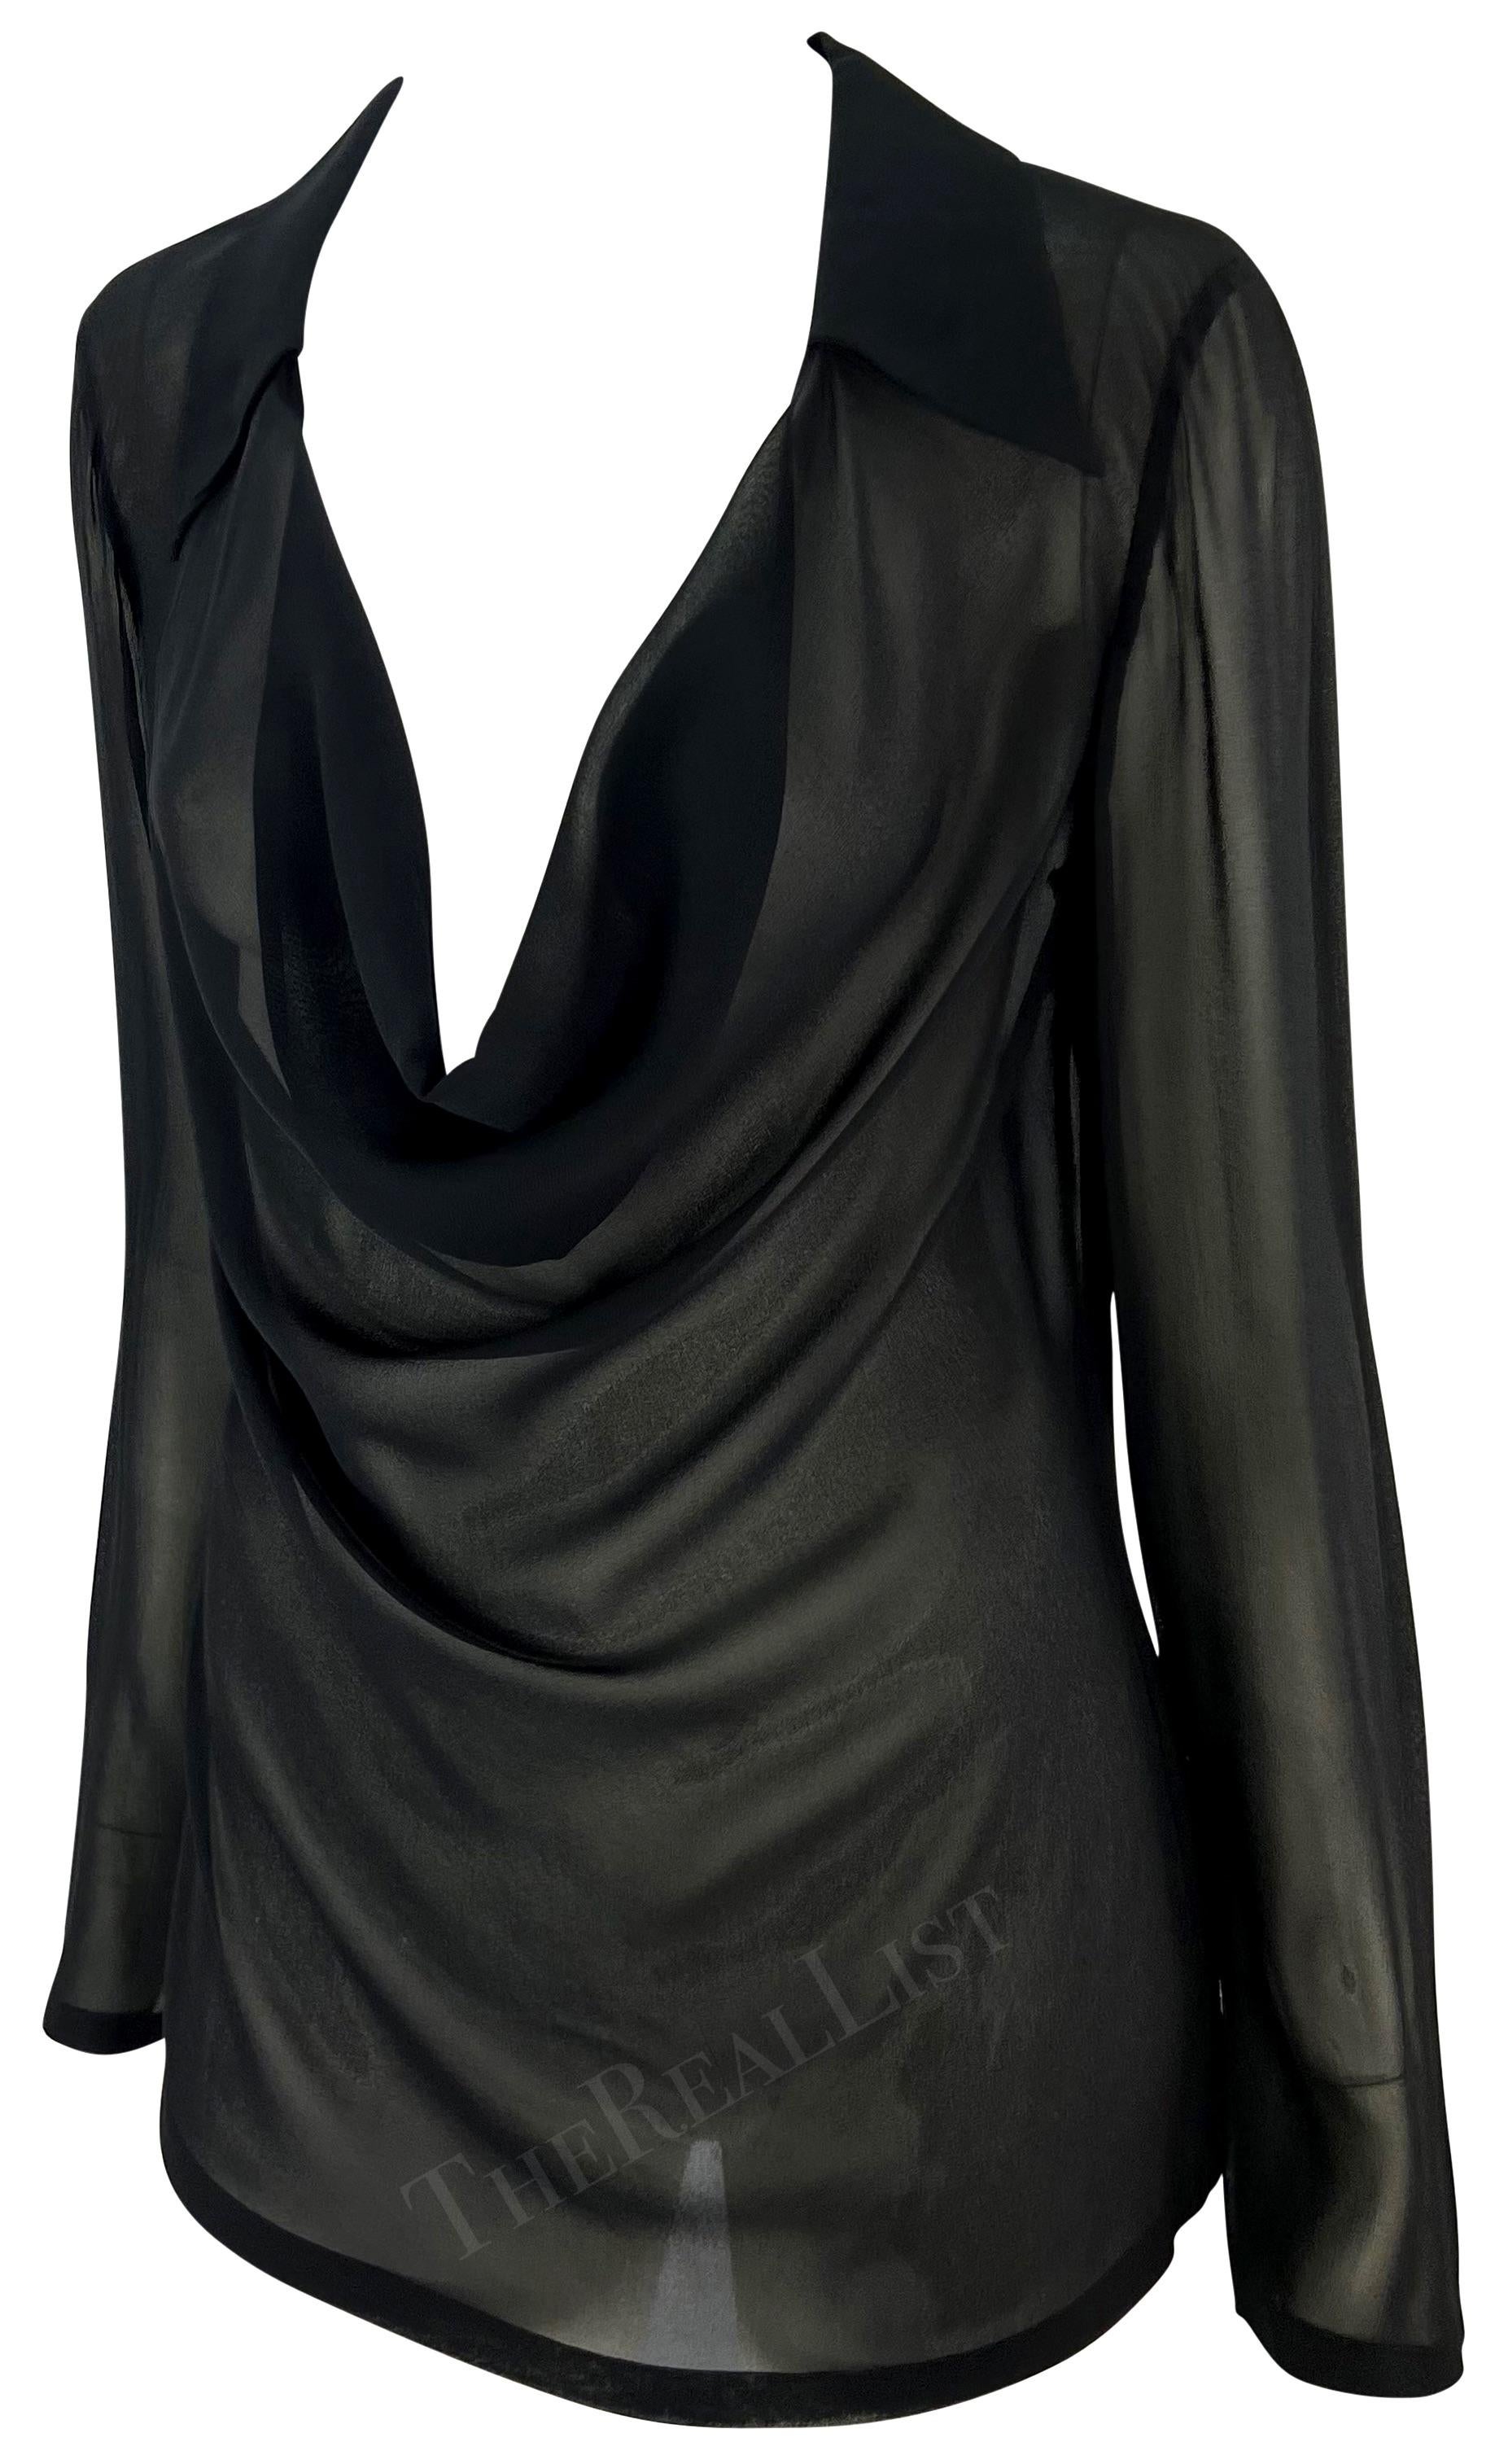 Ich präsentiere eine fabelhafte schwarze Gucci-Bluse, entworfen von Tom Ford. Dieses durchsichtige schwarze Oberteil aus der Frühjahr/Sommer-Kollektion 1997 hat einen tiefen Halsausschnitt, einen umgeschlagenen Kragen und leicht gekrempelte